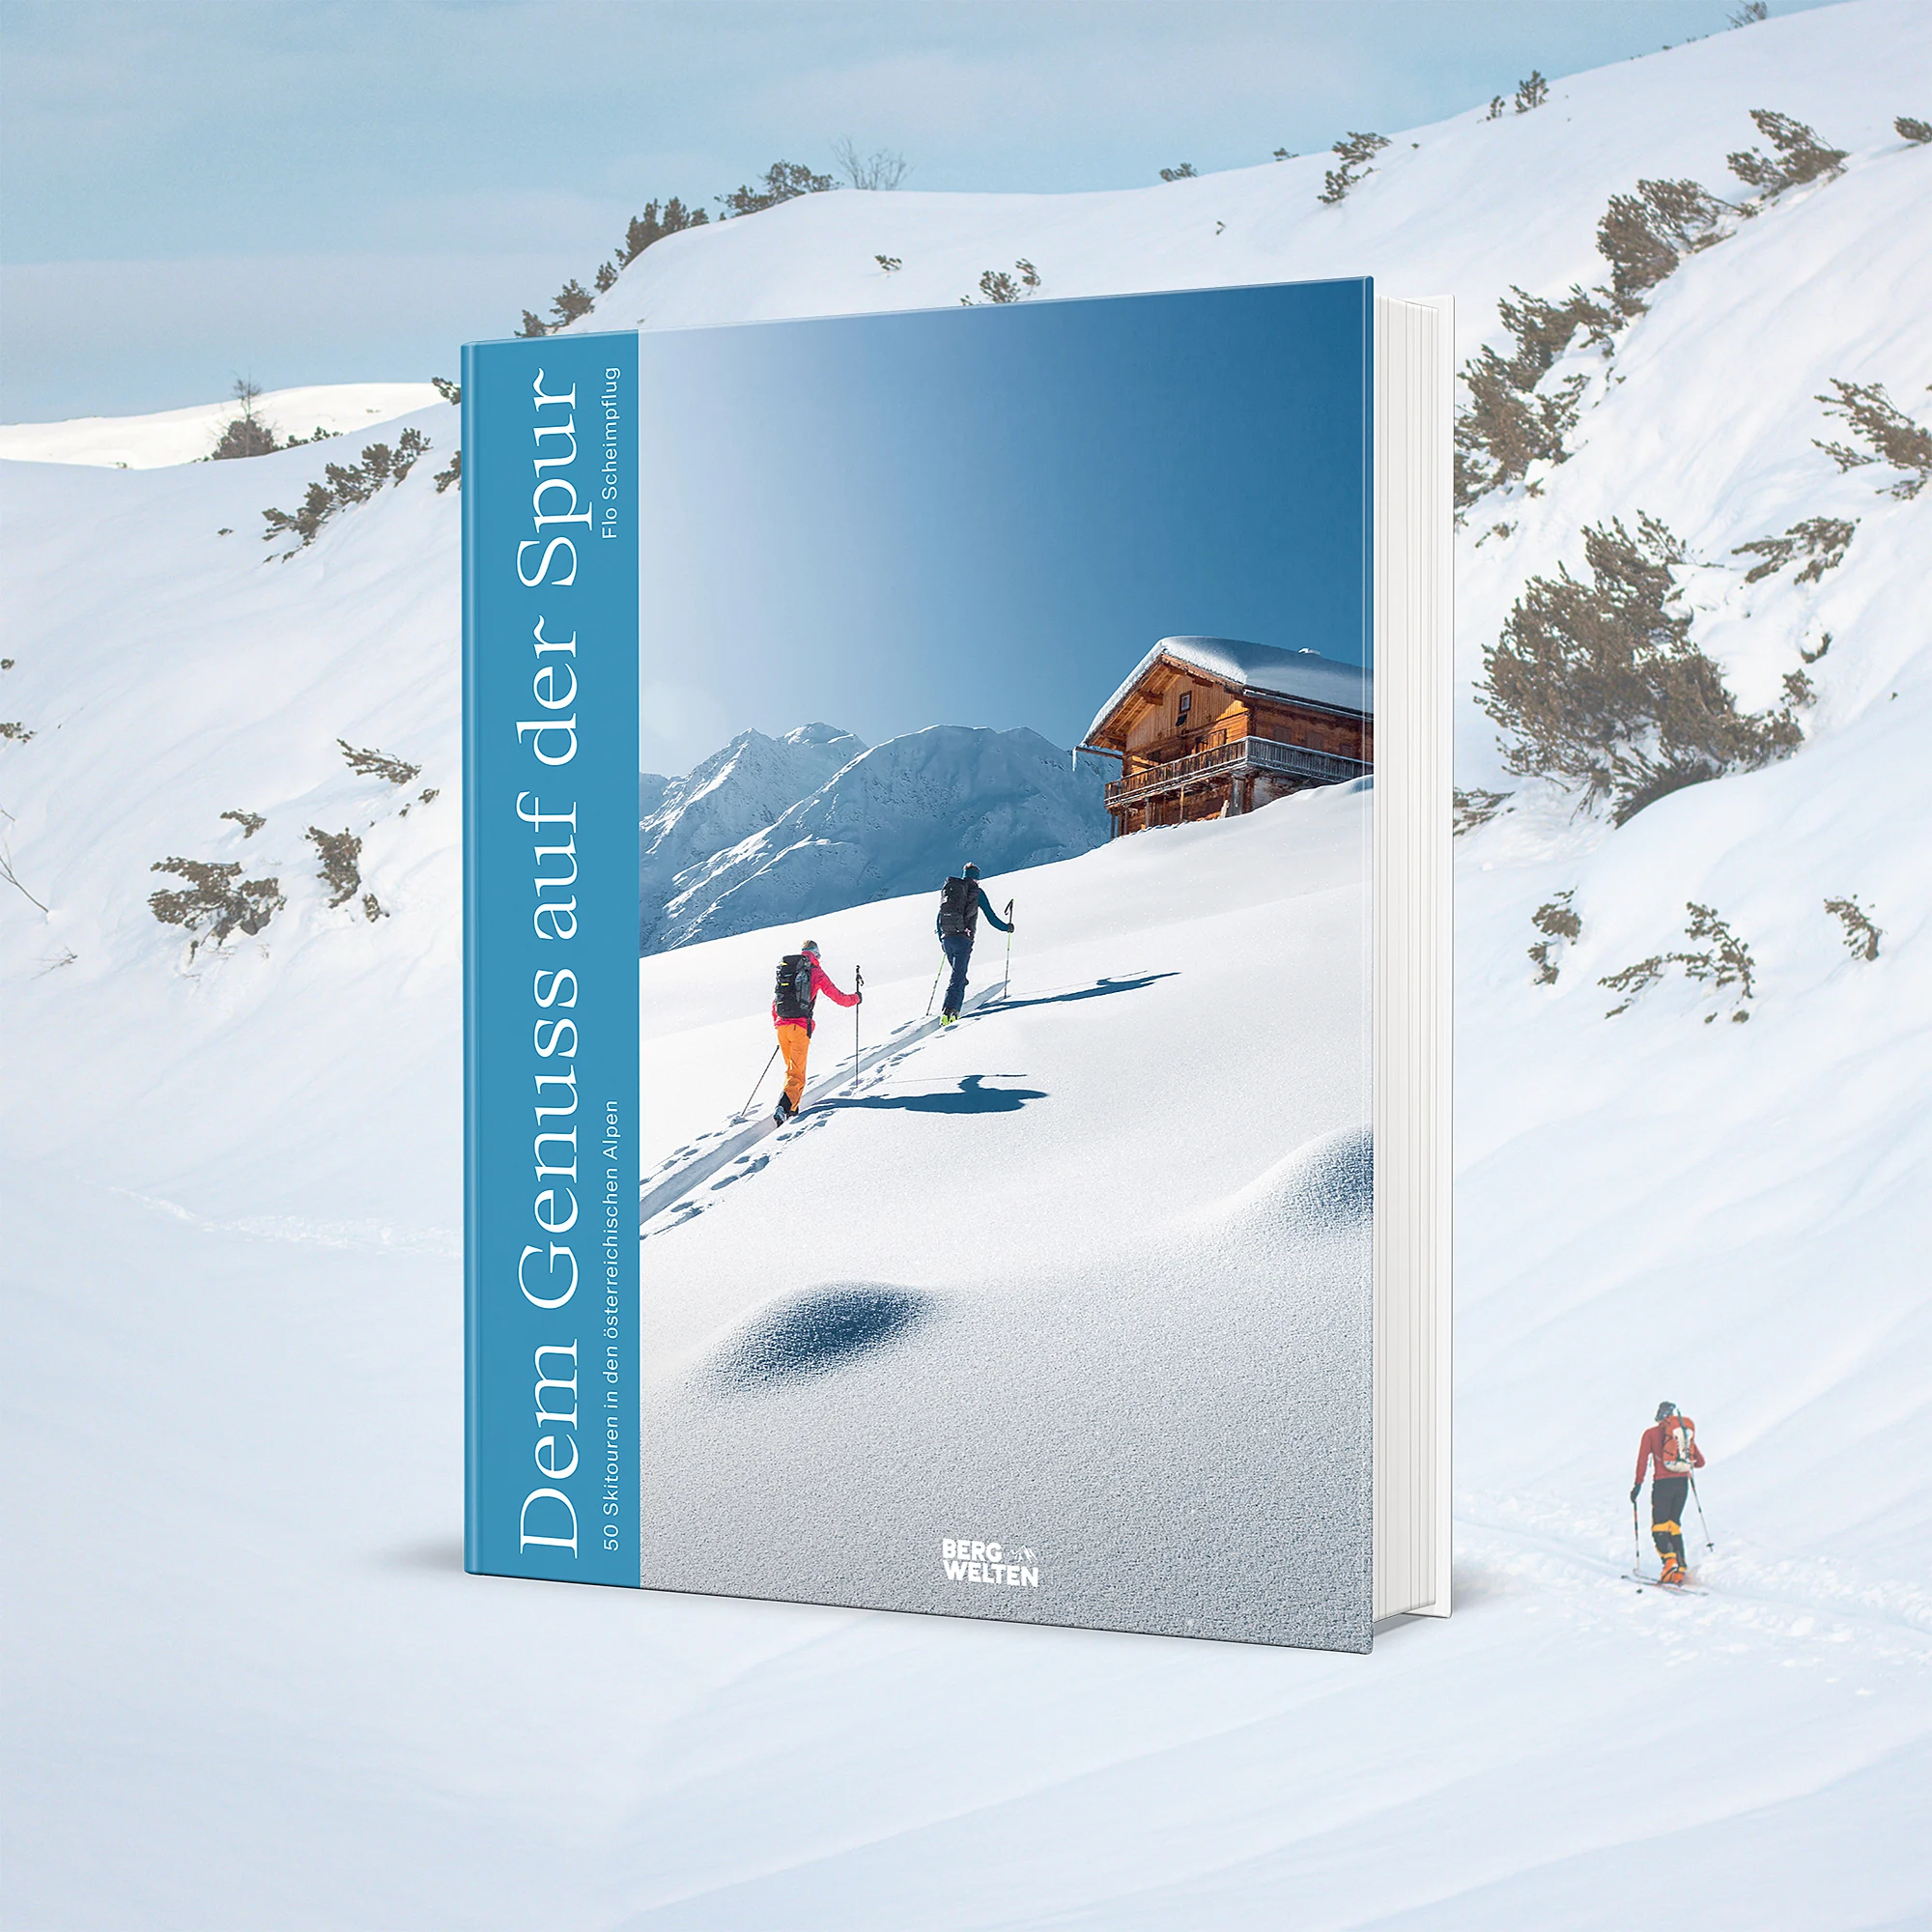 Das Bergwelten-Buch „Dem Genuss auf der Spur“ von Florian Scheimpflug, erschienen im Benevento-Verlag